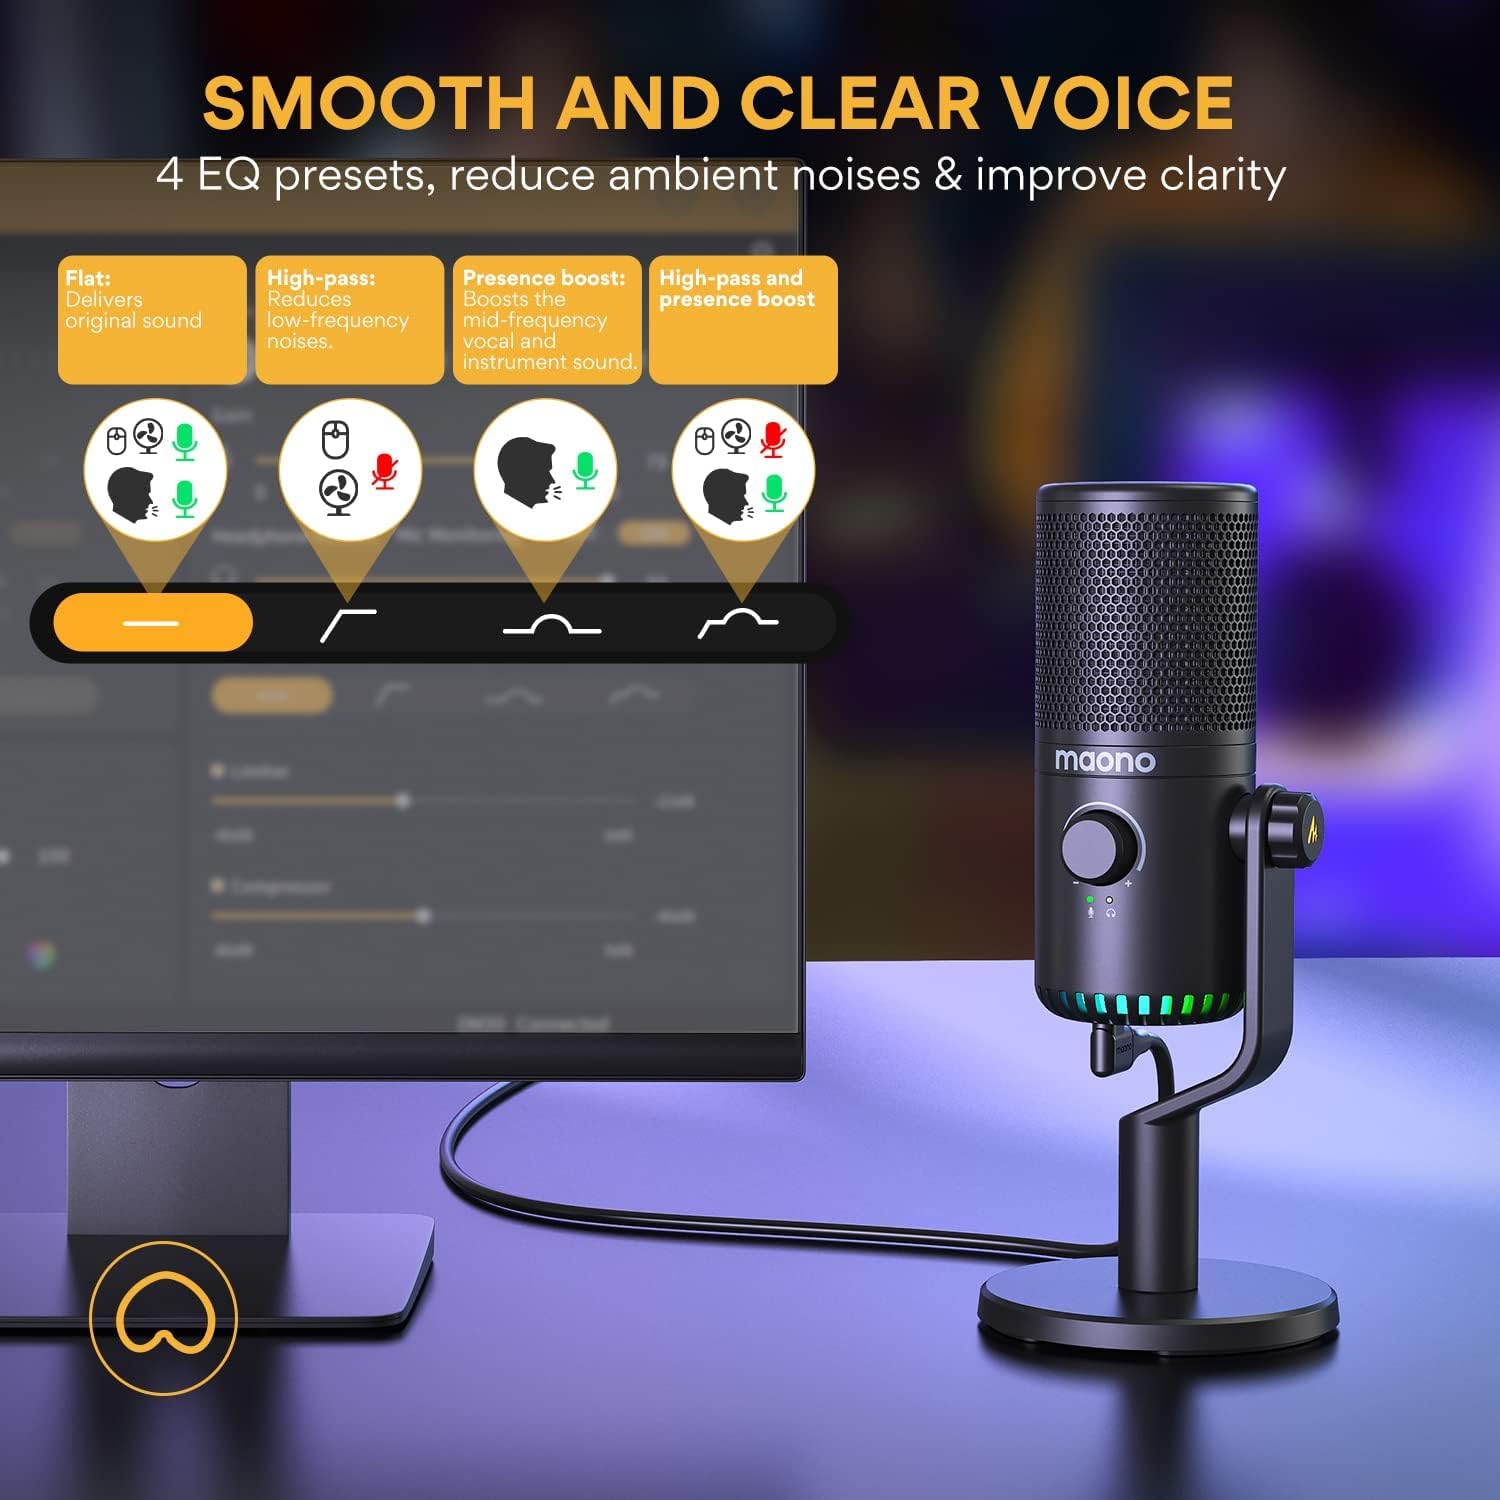  Micrófono de podcast USB, micrófono de computadora condensador  para juegos para transmisión de video de , grabación vocal, micrófono  de PC